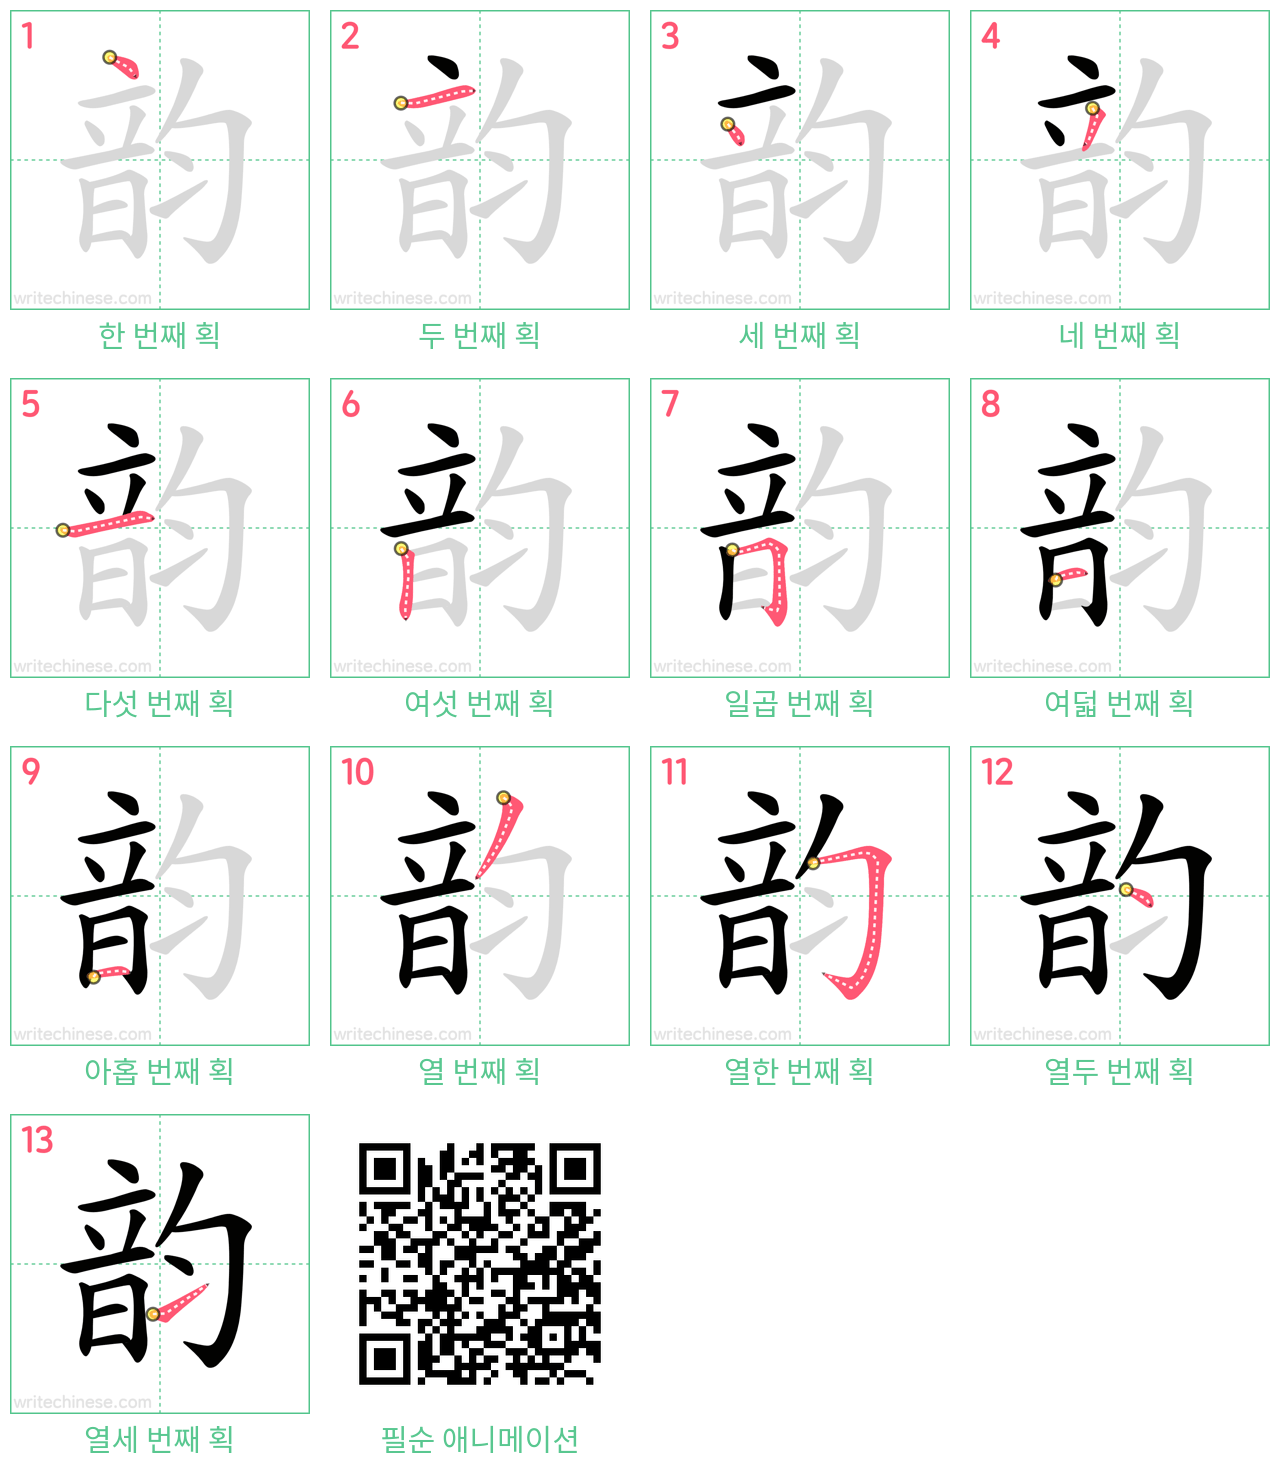 韵 step-by-step stroke order diagrams